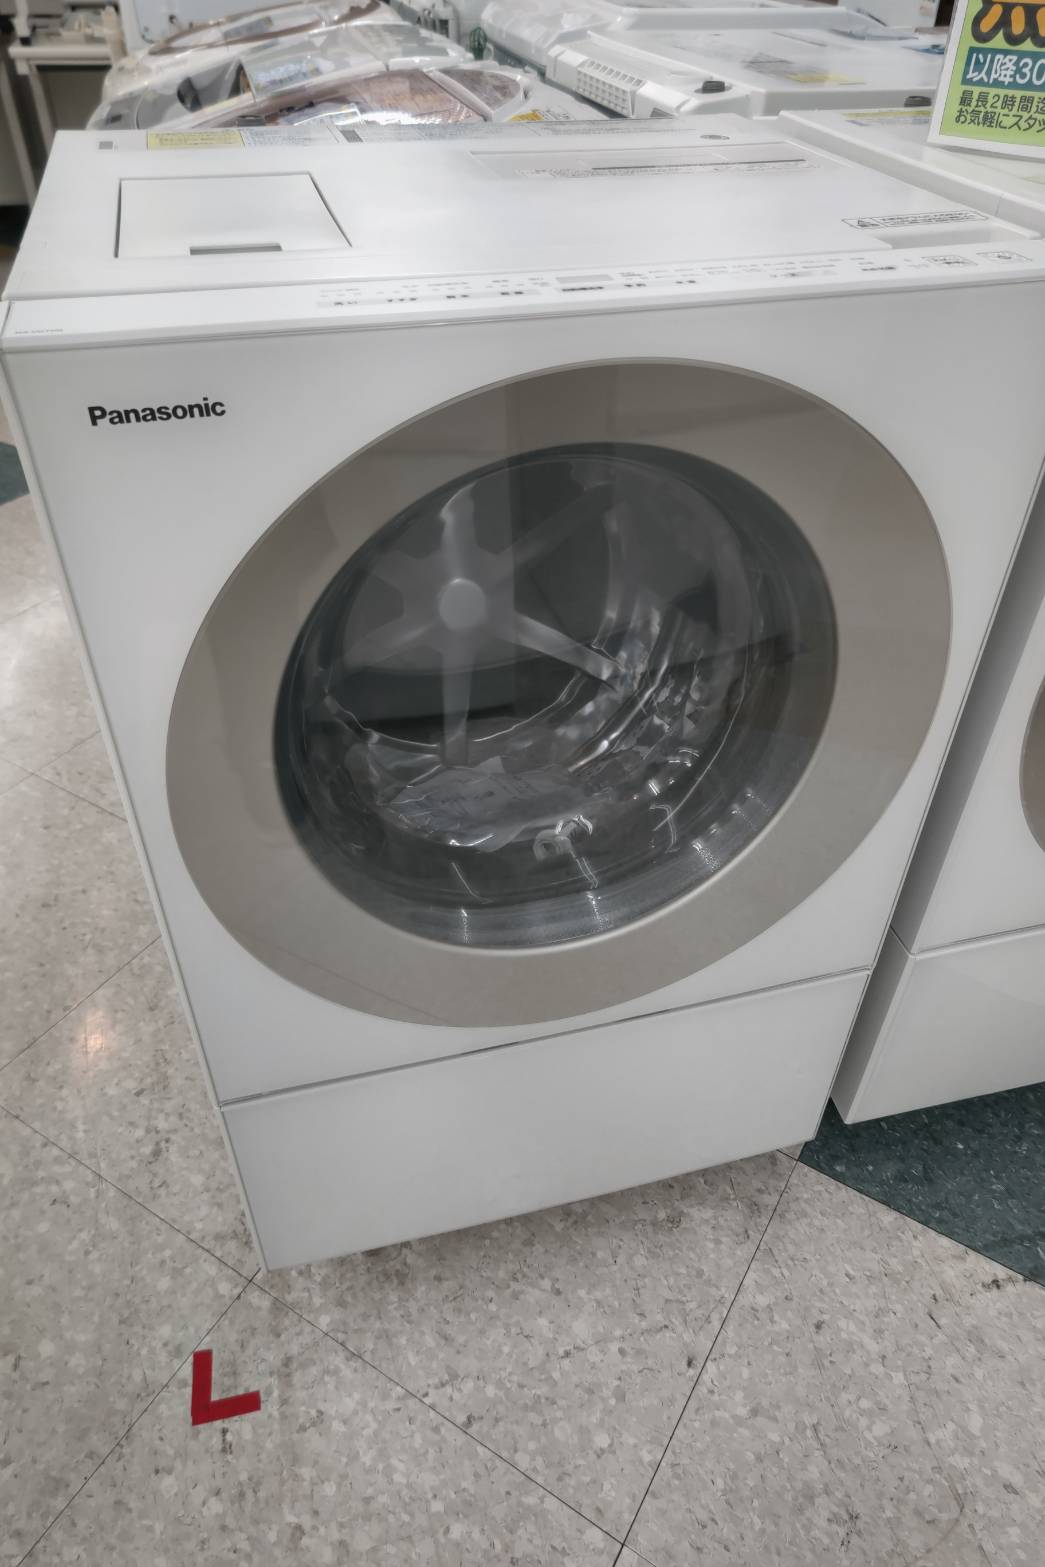 【Panasonic /パナソニック /7.0/3.0㎏ドラム式洗濯乾燥機 /2018年式 /NA-VG720L】買取させて頂きました！！ - リサイクルマートは現在冷蔵庫の買取、家具の買取強化中です！お気軽にお問い合わせください。